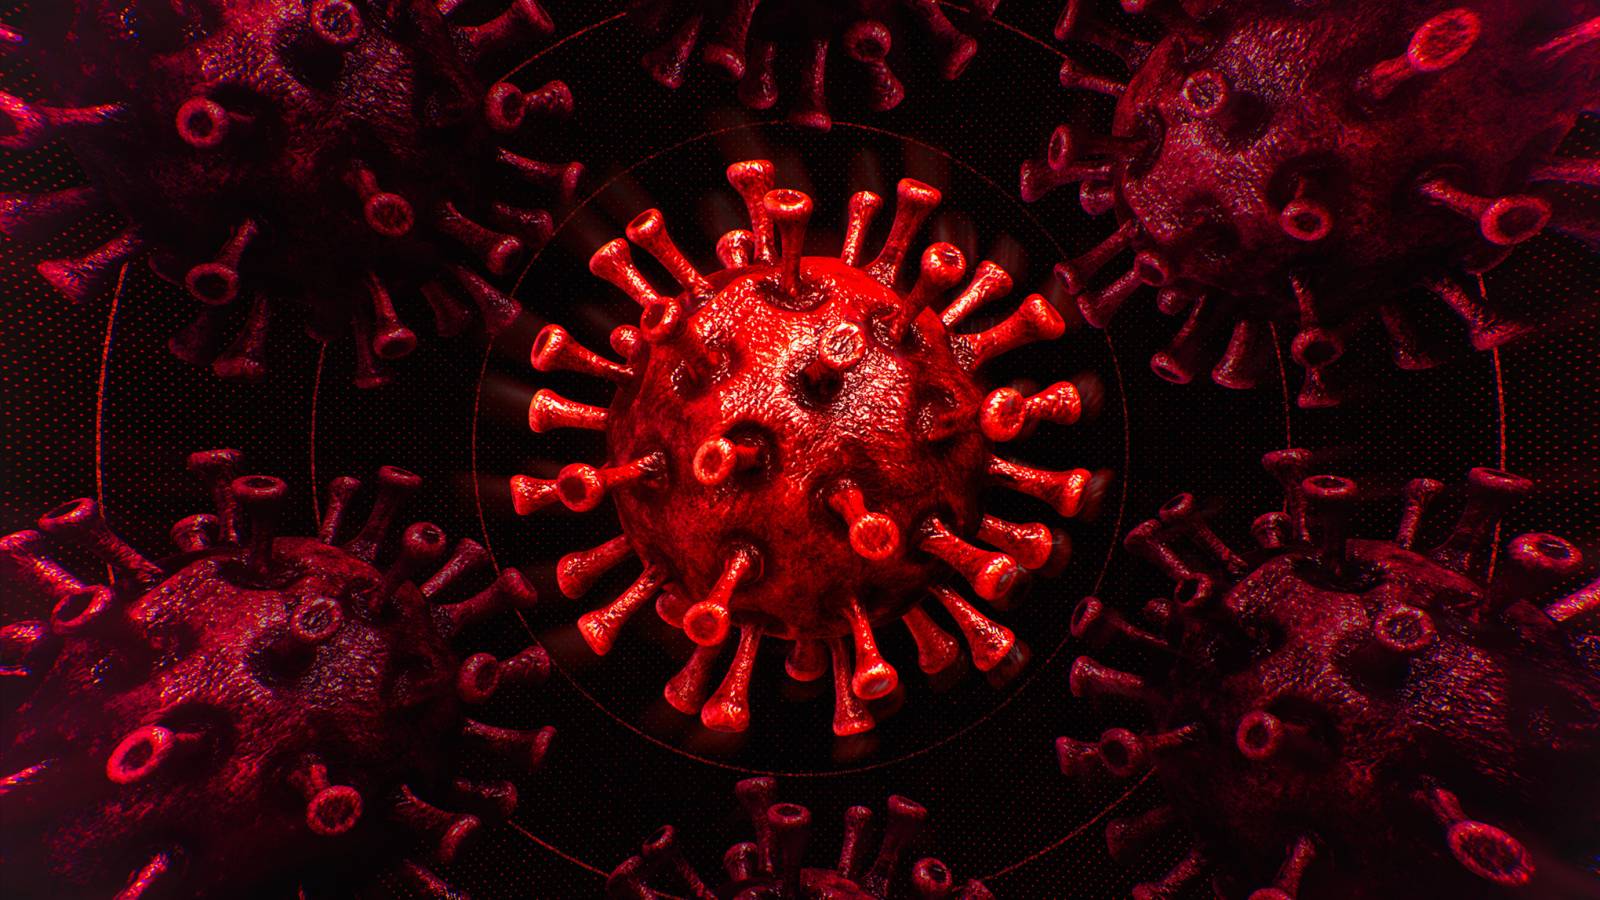 Coronavirus Rumänien Nya fall, botar 21 december